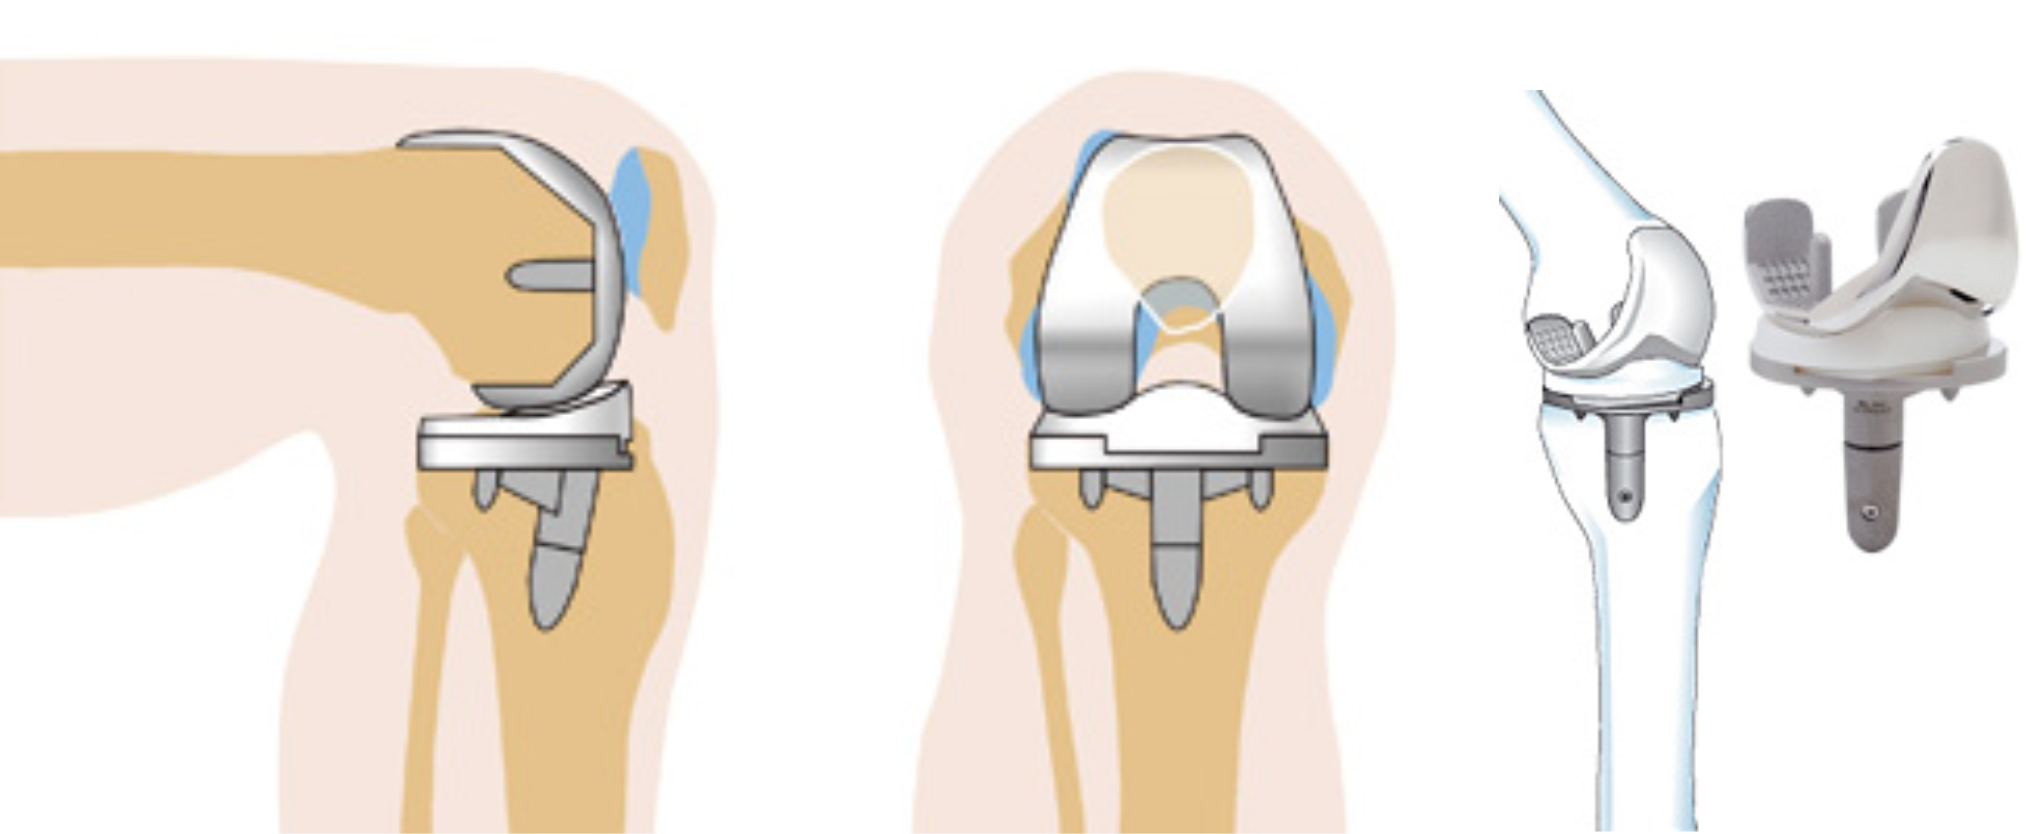 Эндопротез коленного сустава. Тотальное эндопротезирование коленного сустава DEPUY. Эндопротезирование коленного сустава этапы операции. Артроз коленного сустава эндопротез. Операции на коленном суставе стоимость